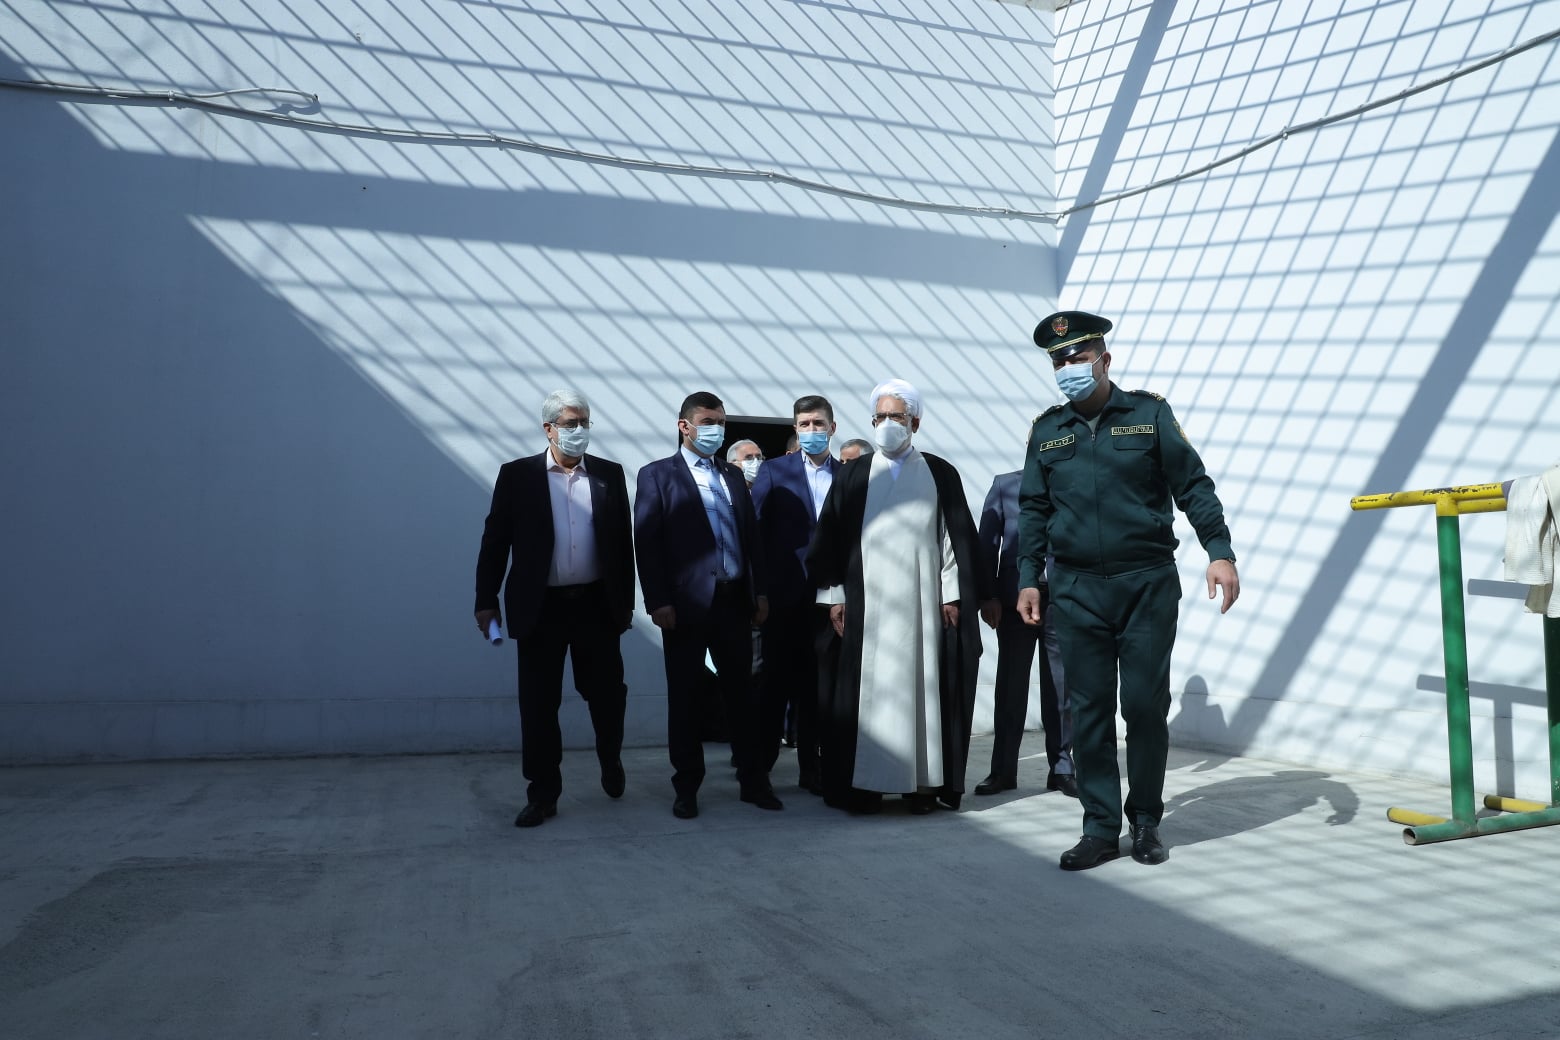 Իրանի գլխավոր դատախազն այցելել է «Արմավիր» ՔԿՀ՝ իրանցի դատապարտյալներին